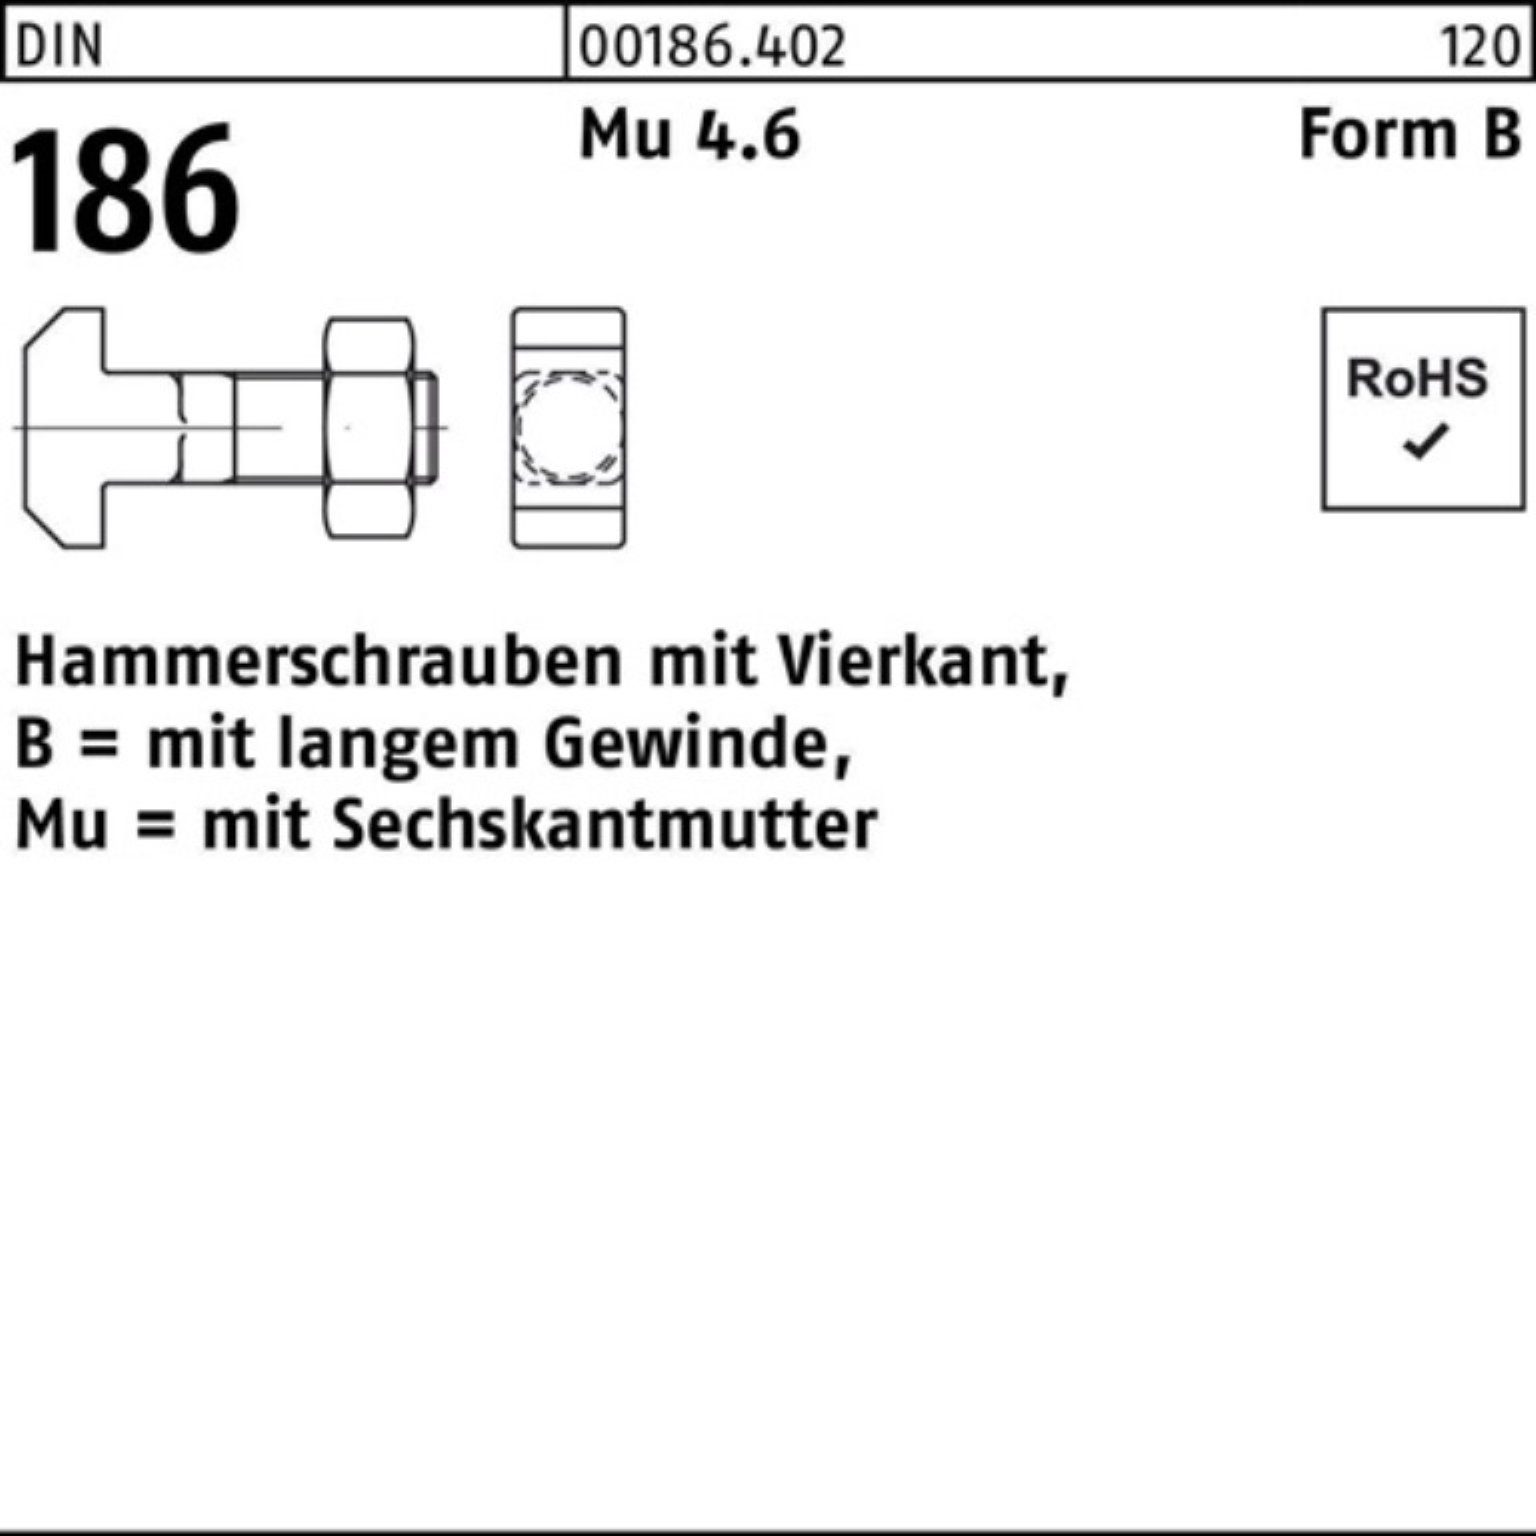 Reyher Schraube 100er Pack Hammerschraube DIN 186 FormB Vierkant 6-ktmutter BM 8x 40 M